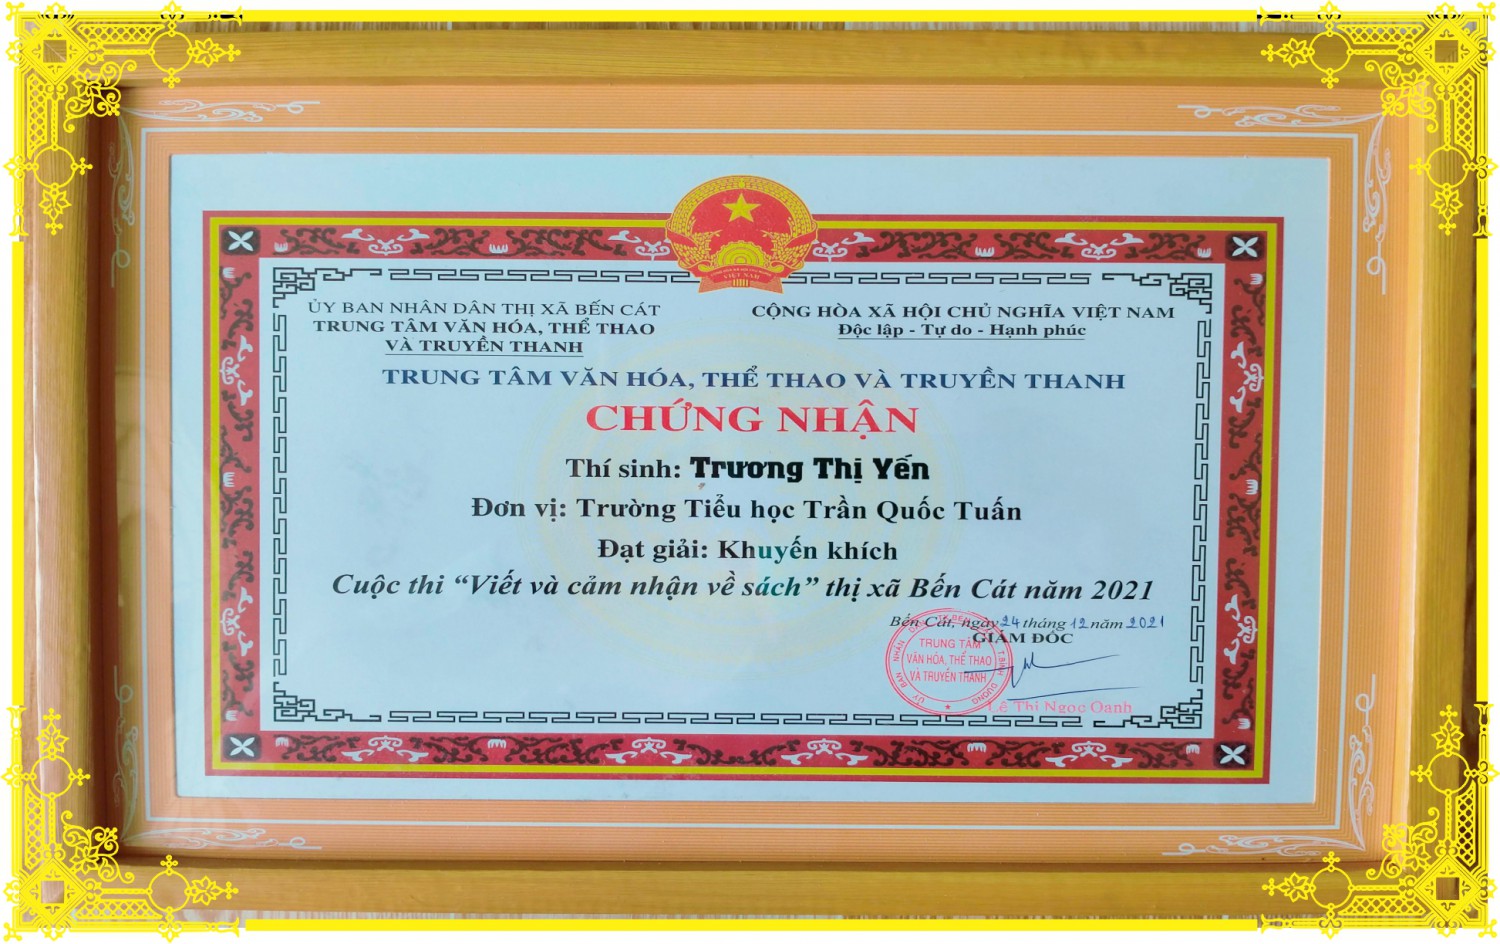 7 Truong Thi Yen KK